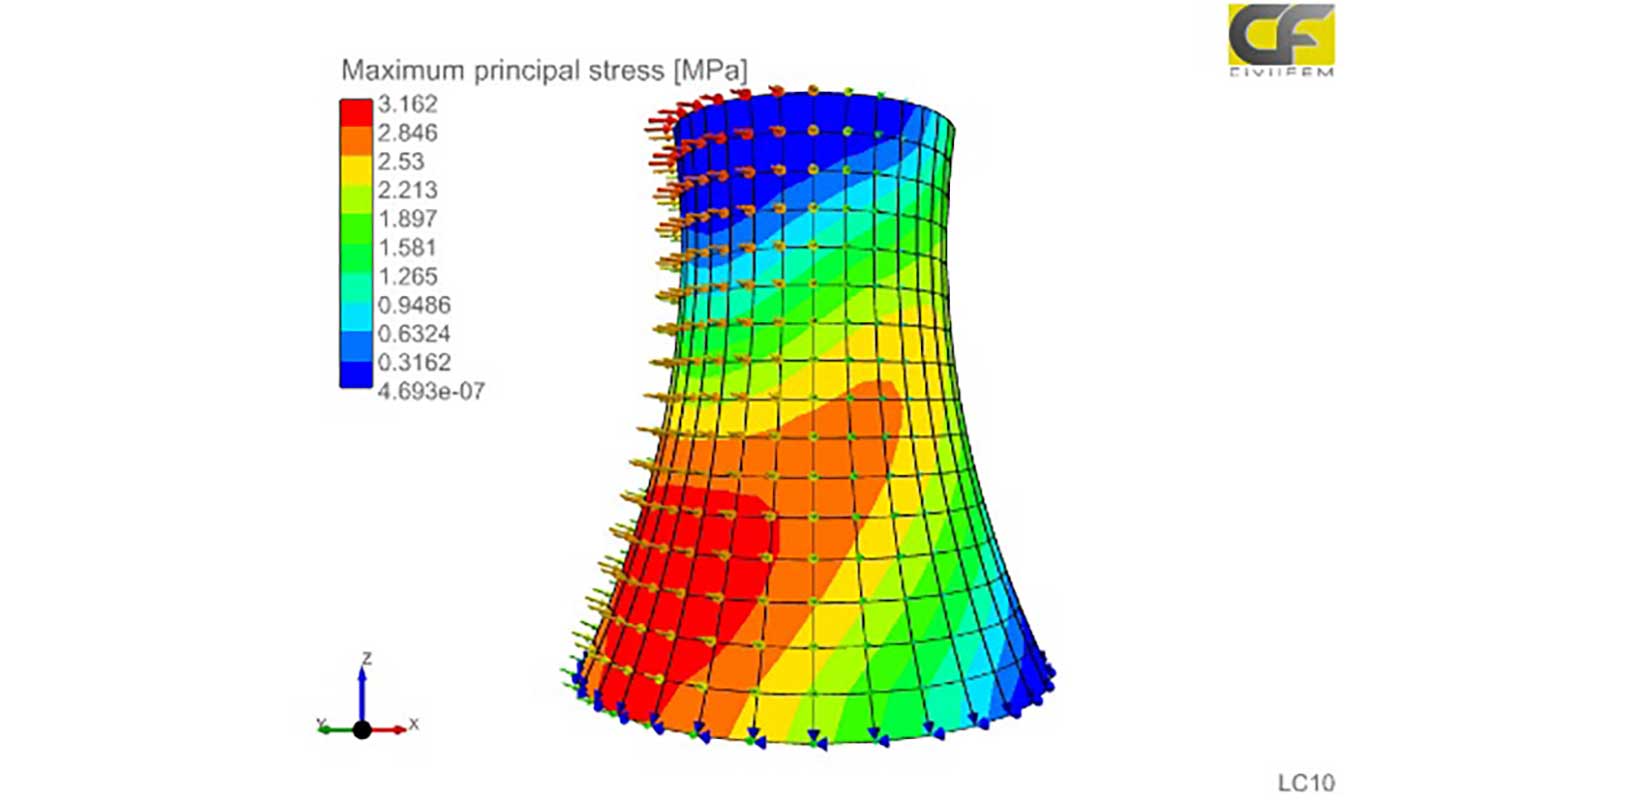 Simulação multifísica para a análise estrutural de usinas nucleares utilizando o CivilFEM, desenvolvido pela Marc